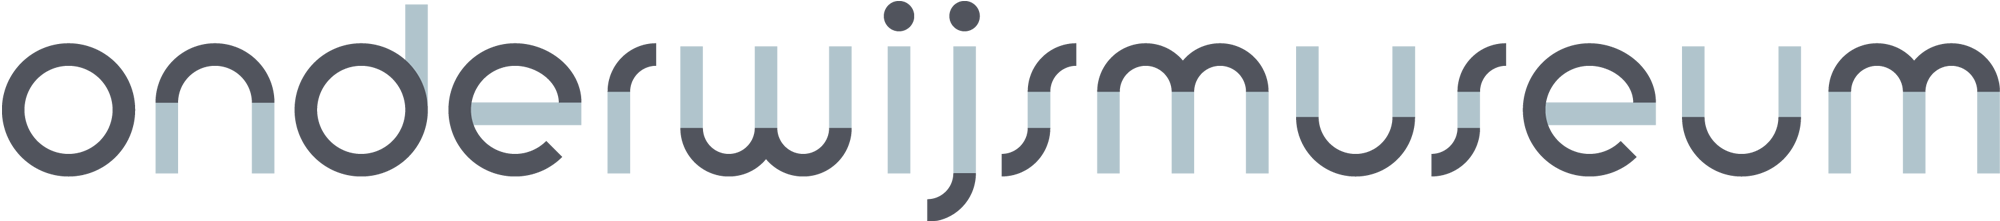 onderwijsmuseum logo